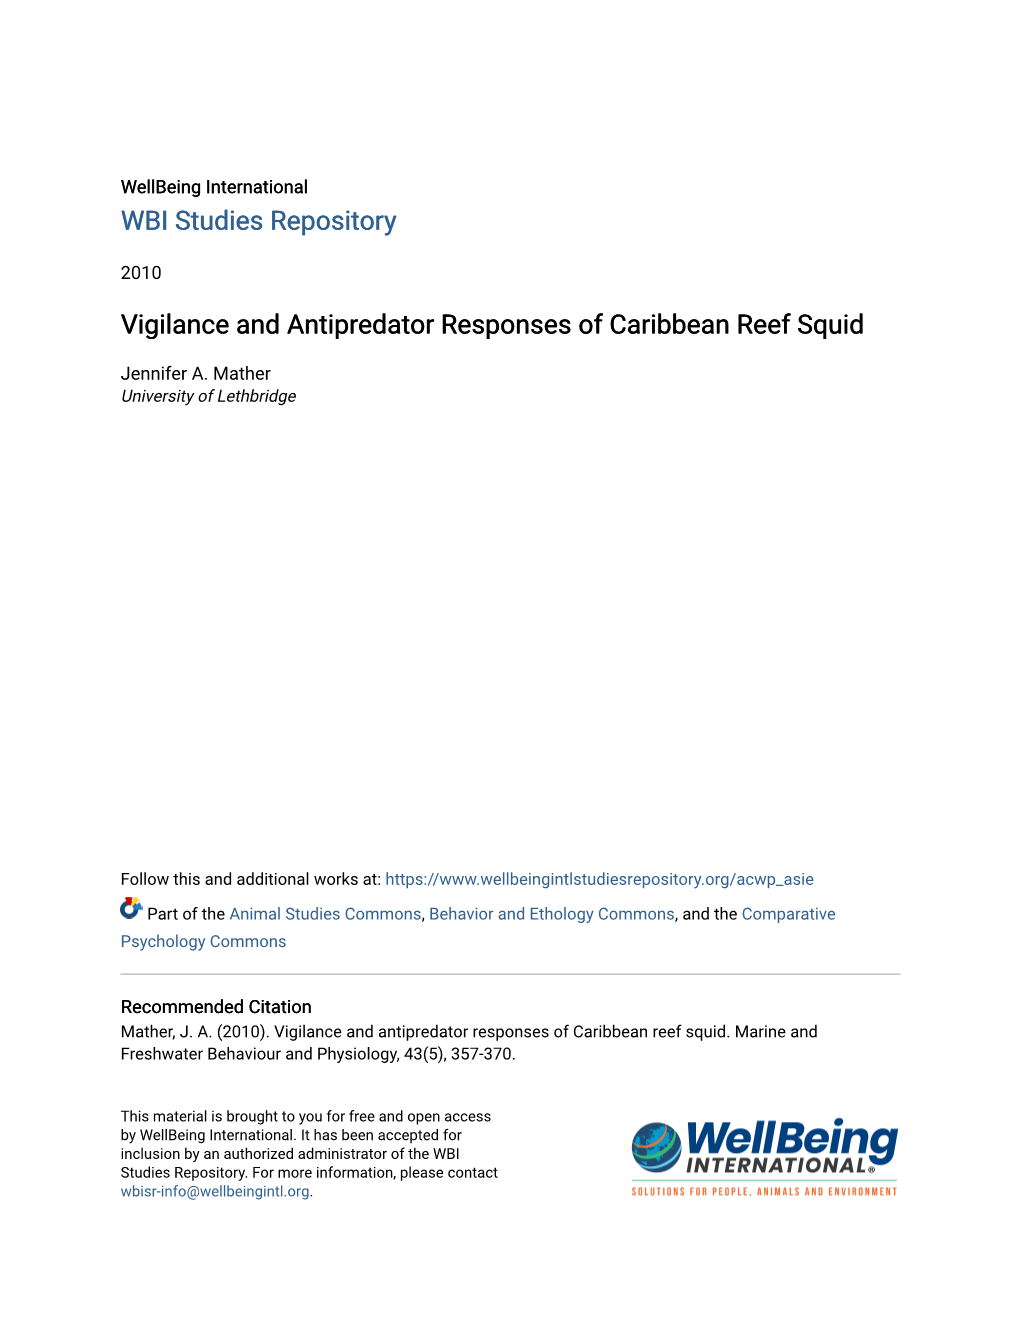 Vigilance and Antipredator Responses of Caribbean Reef Squid